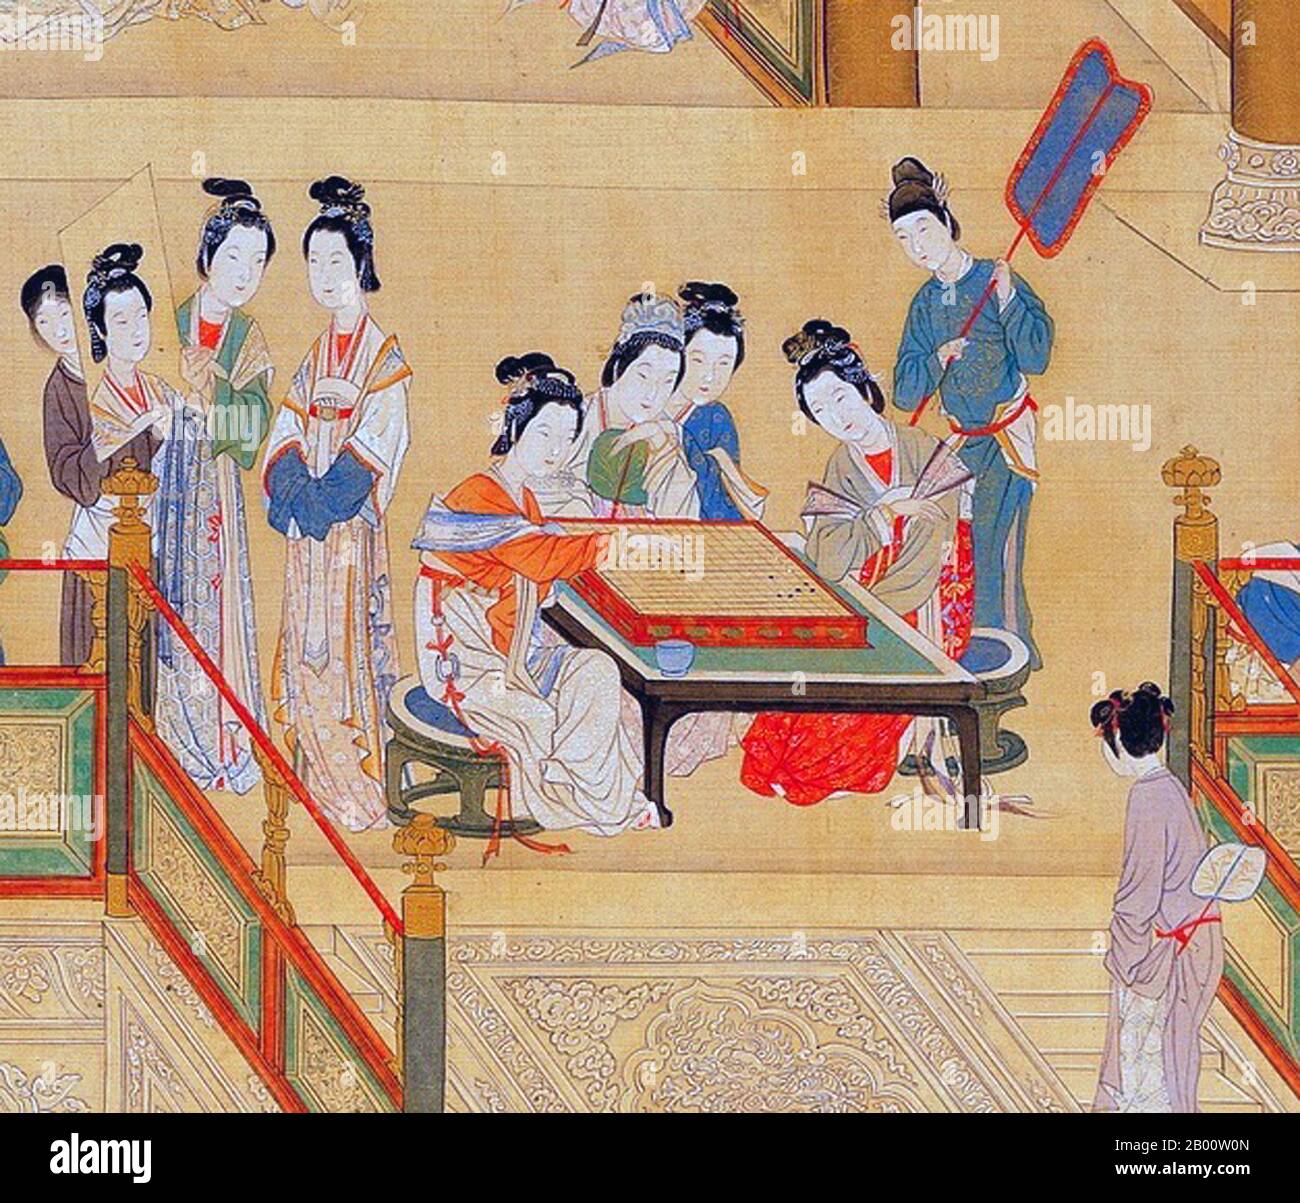 China: Eine Gruppe von Palastdamen spielt "Go" in der Verbotenen Stadt, Peking. Handscroll Gemälde von Qiu Ying (1494-1552), 16. Jahrhundert. Go (japanischer Name), bekannt als "weiqi" auf Chinesisch und "baduk" auf Koreanisch, ist ein altes Brettspiel für zwei Spieler, das trotz seiner relativ einfachen Regeln bekannt ist, reich an Strategie zu sein. Stockfoto